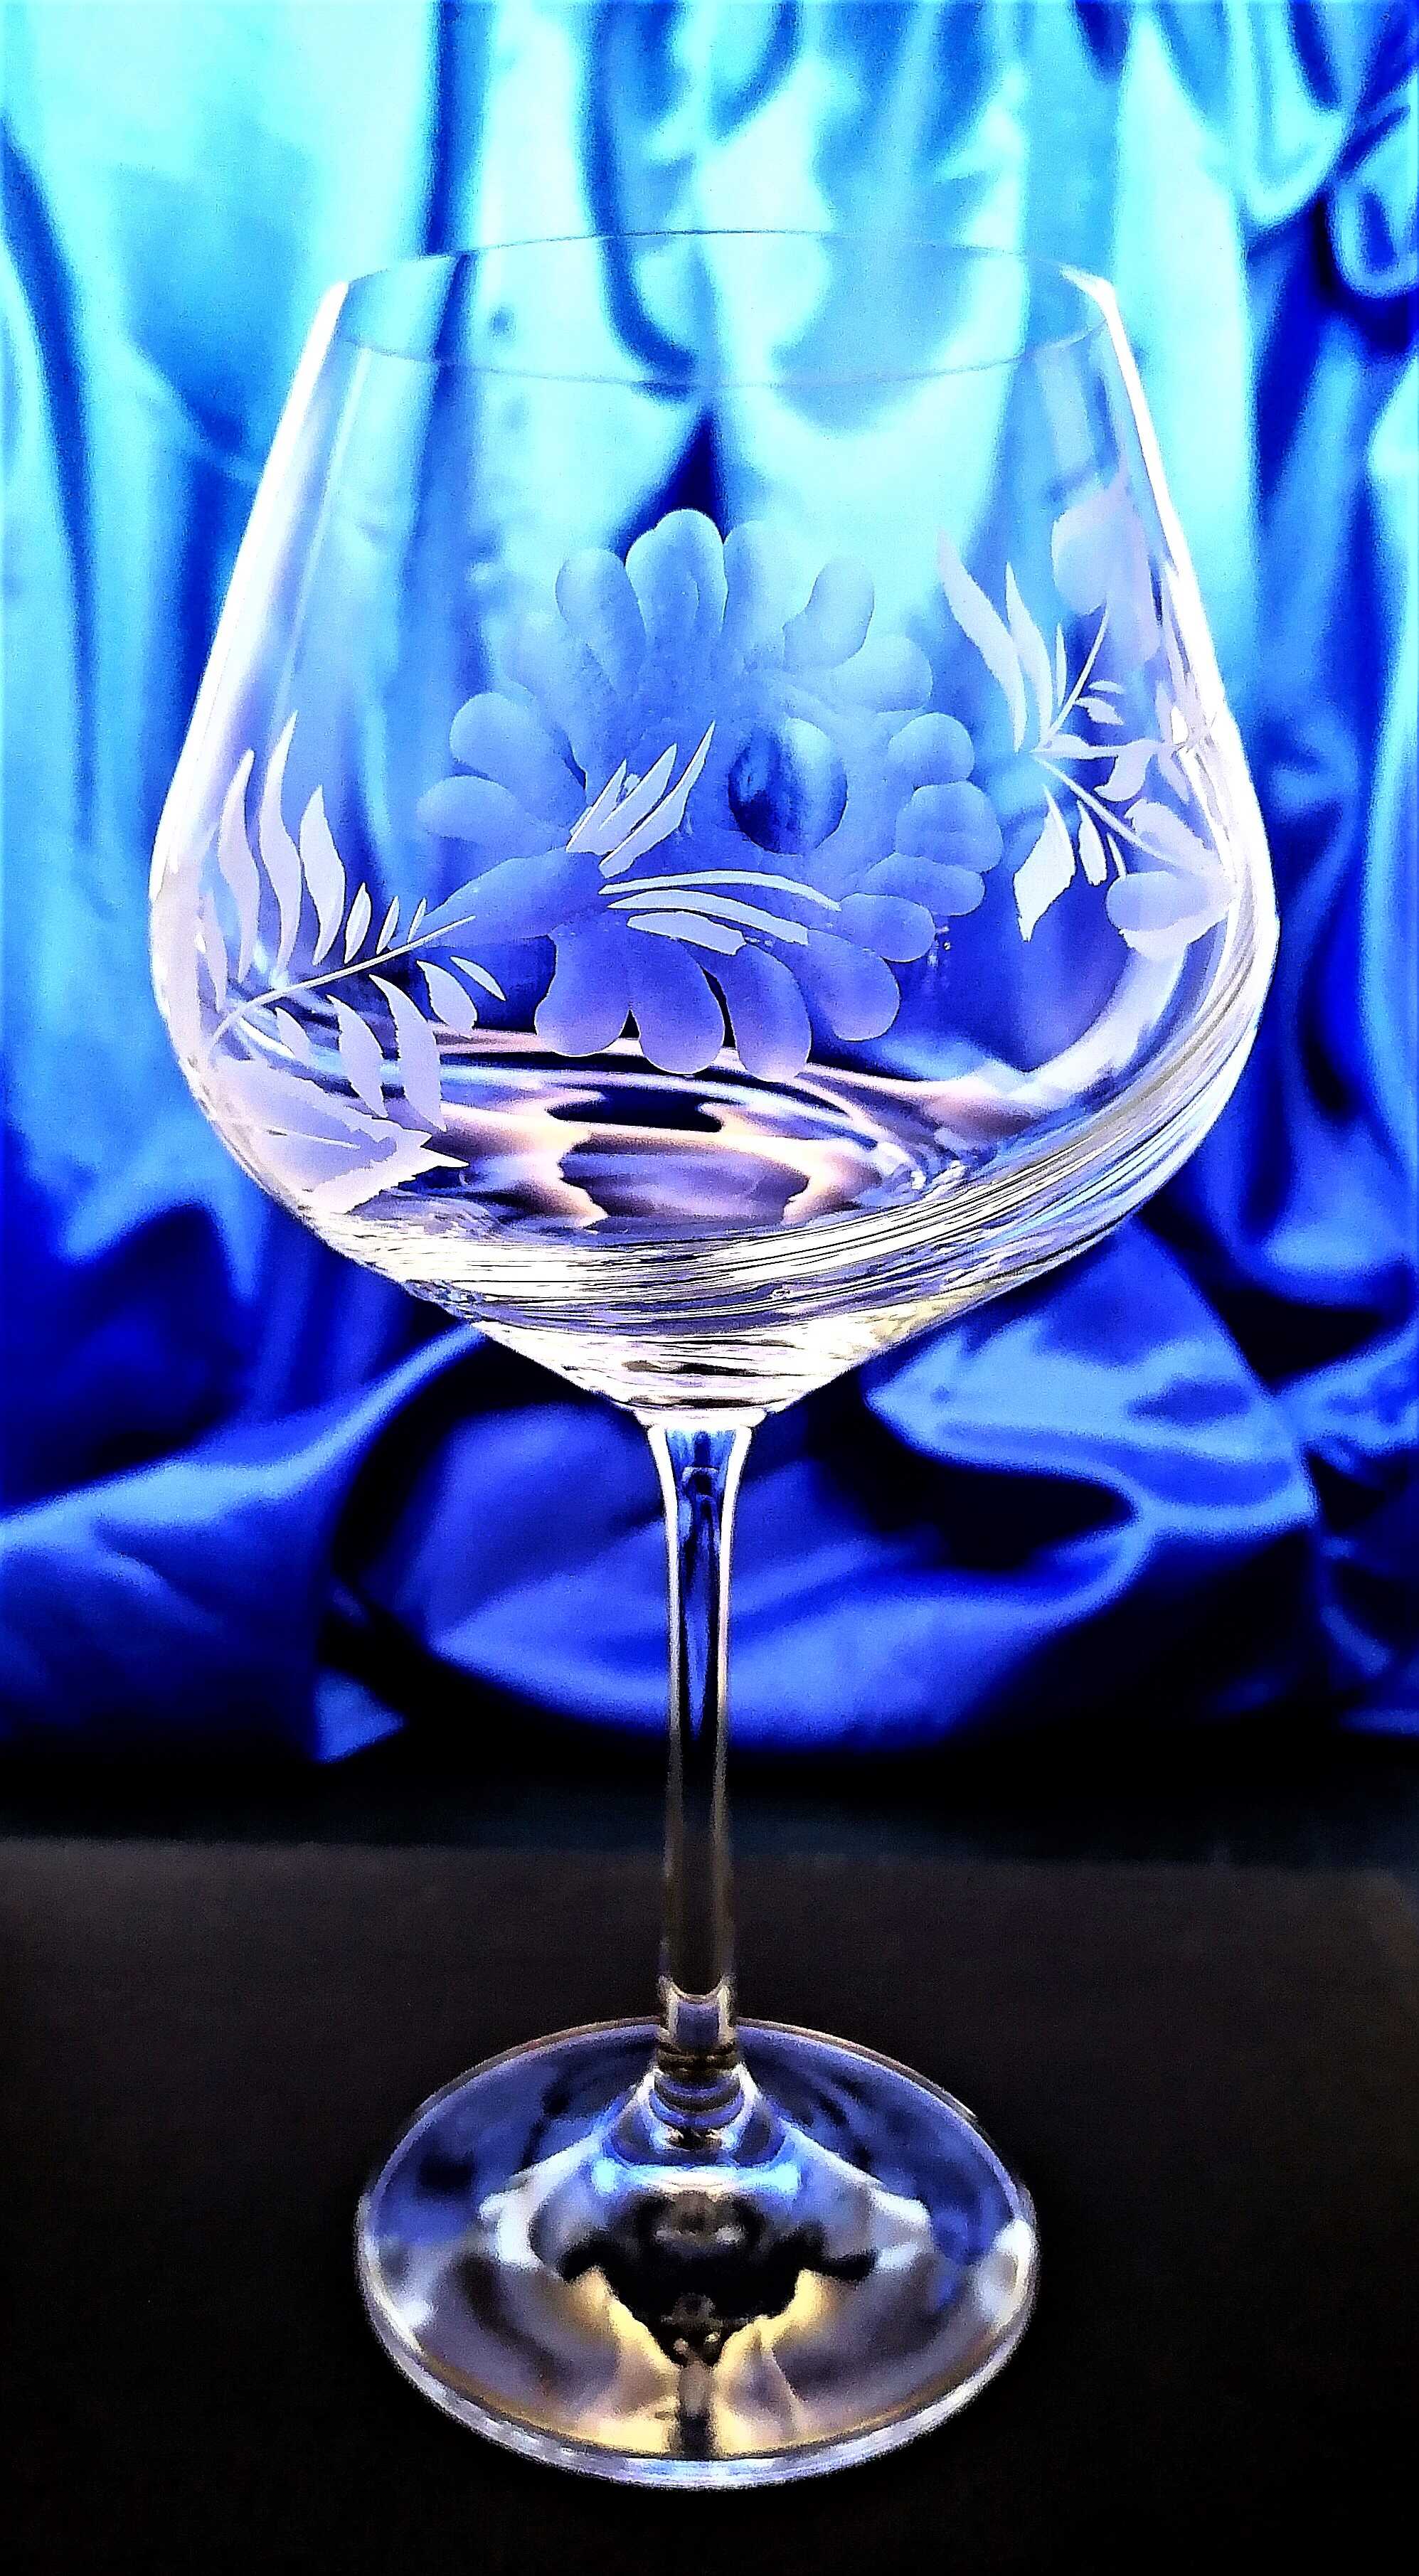 Burgund Glas/ Burgundgläser Hand geschliffen Rosel Turbulenz-7013 570 ml 2 Stk.